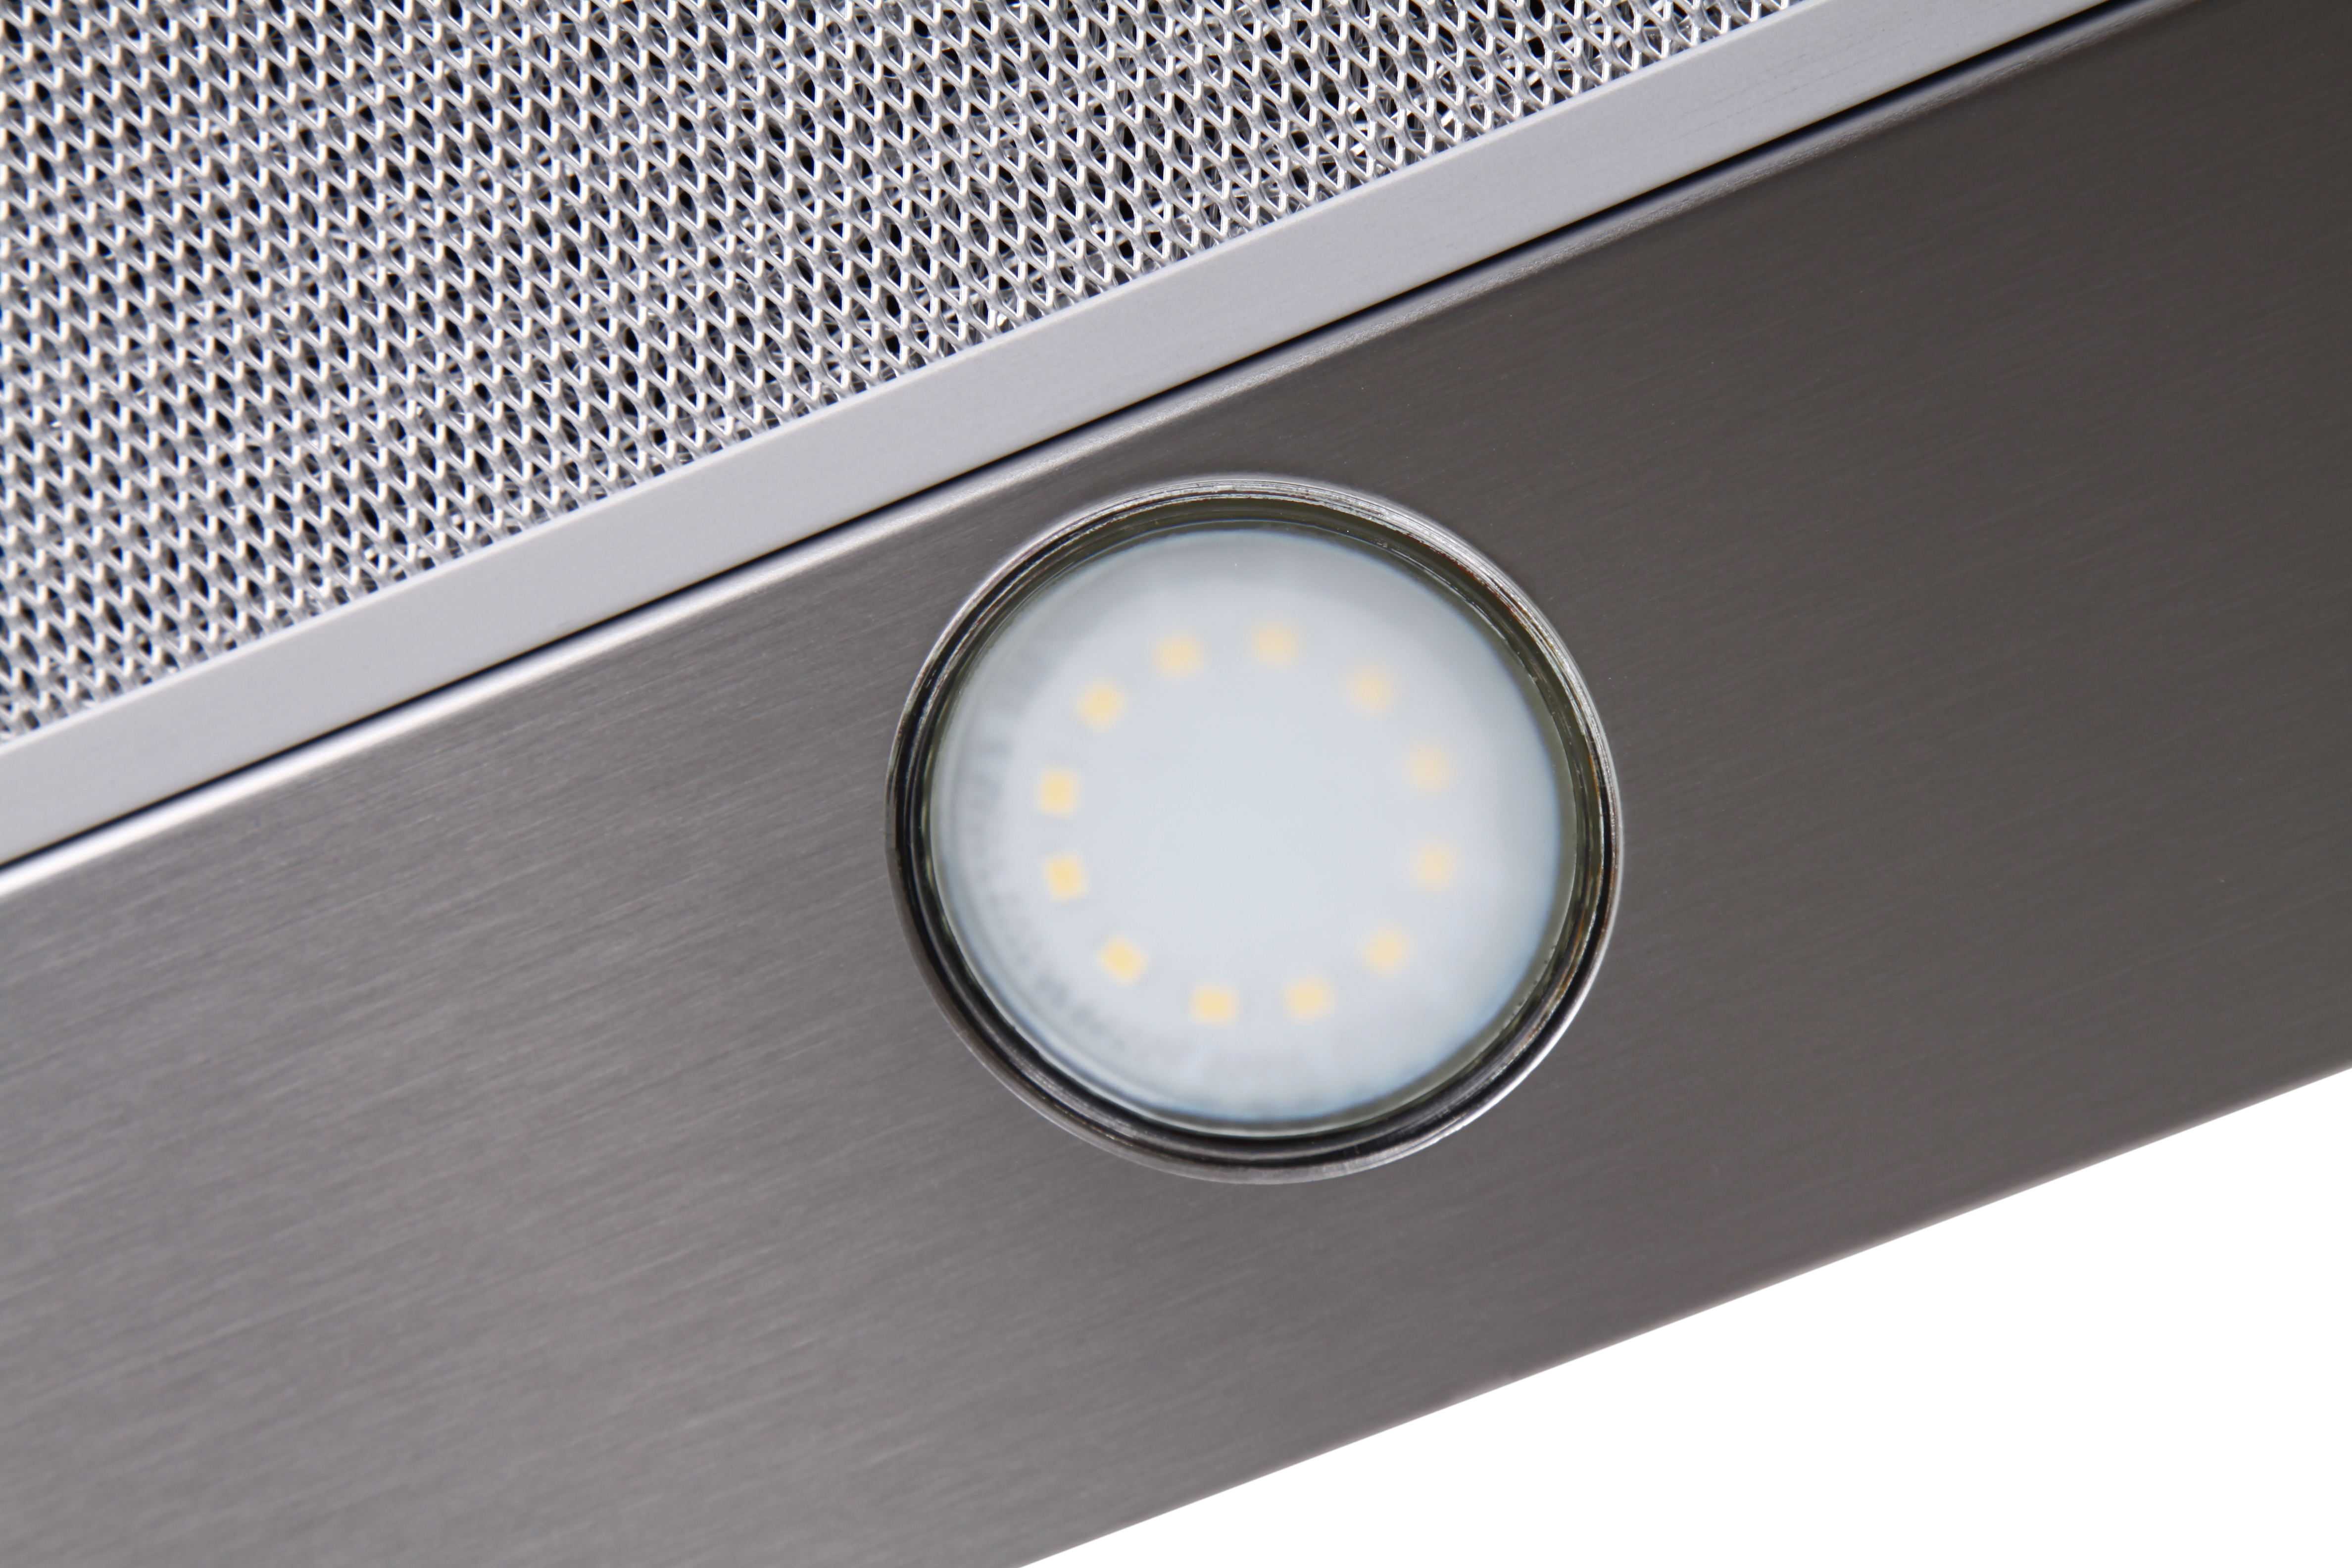 Кухонная вытяжка Ventolux GARDA 60 INOX (1100) SMD LED отзывы - изображения 5